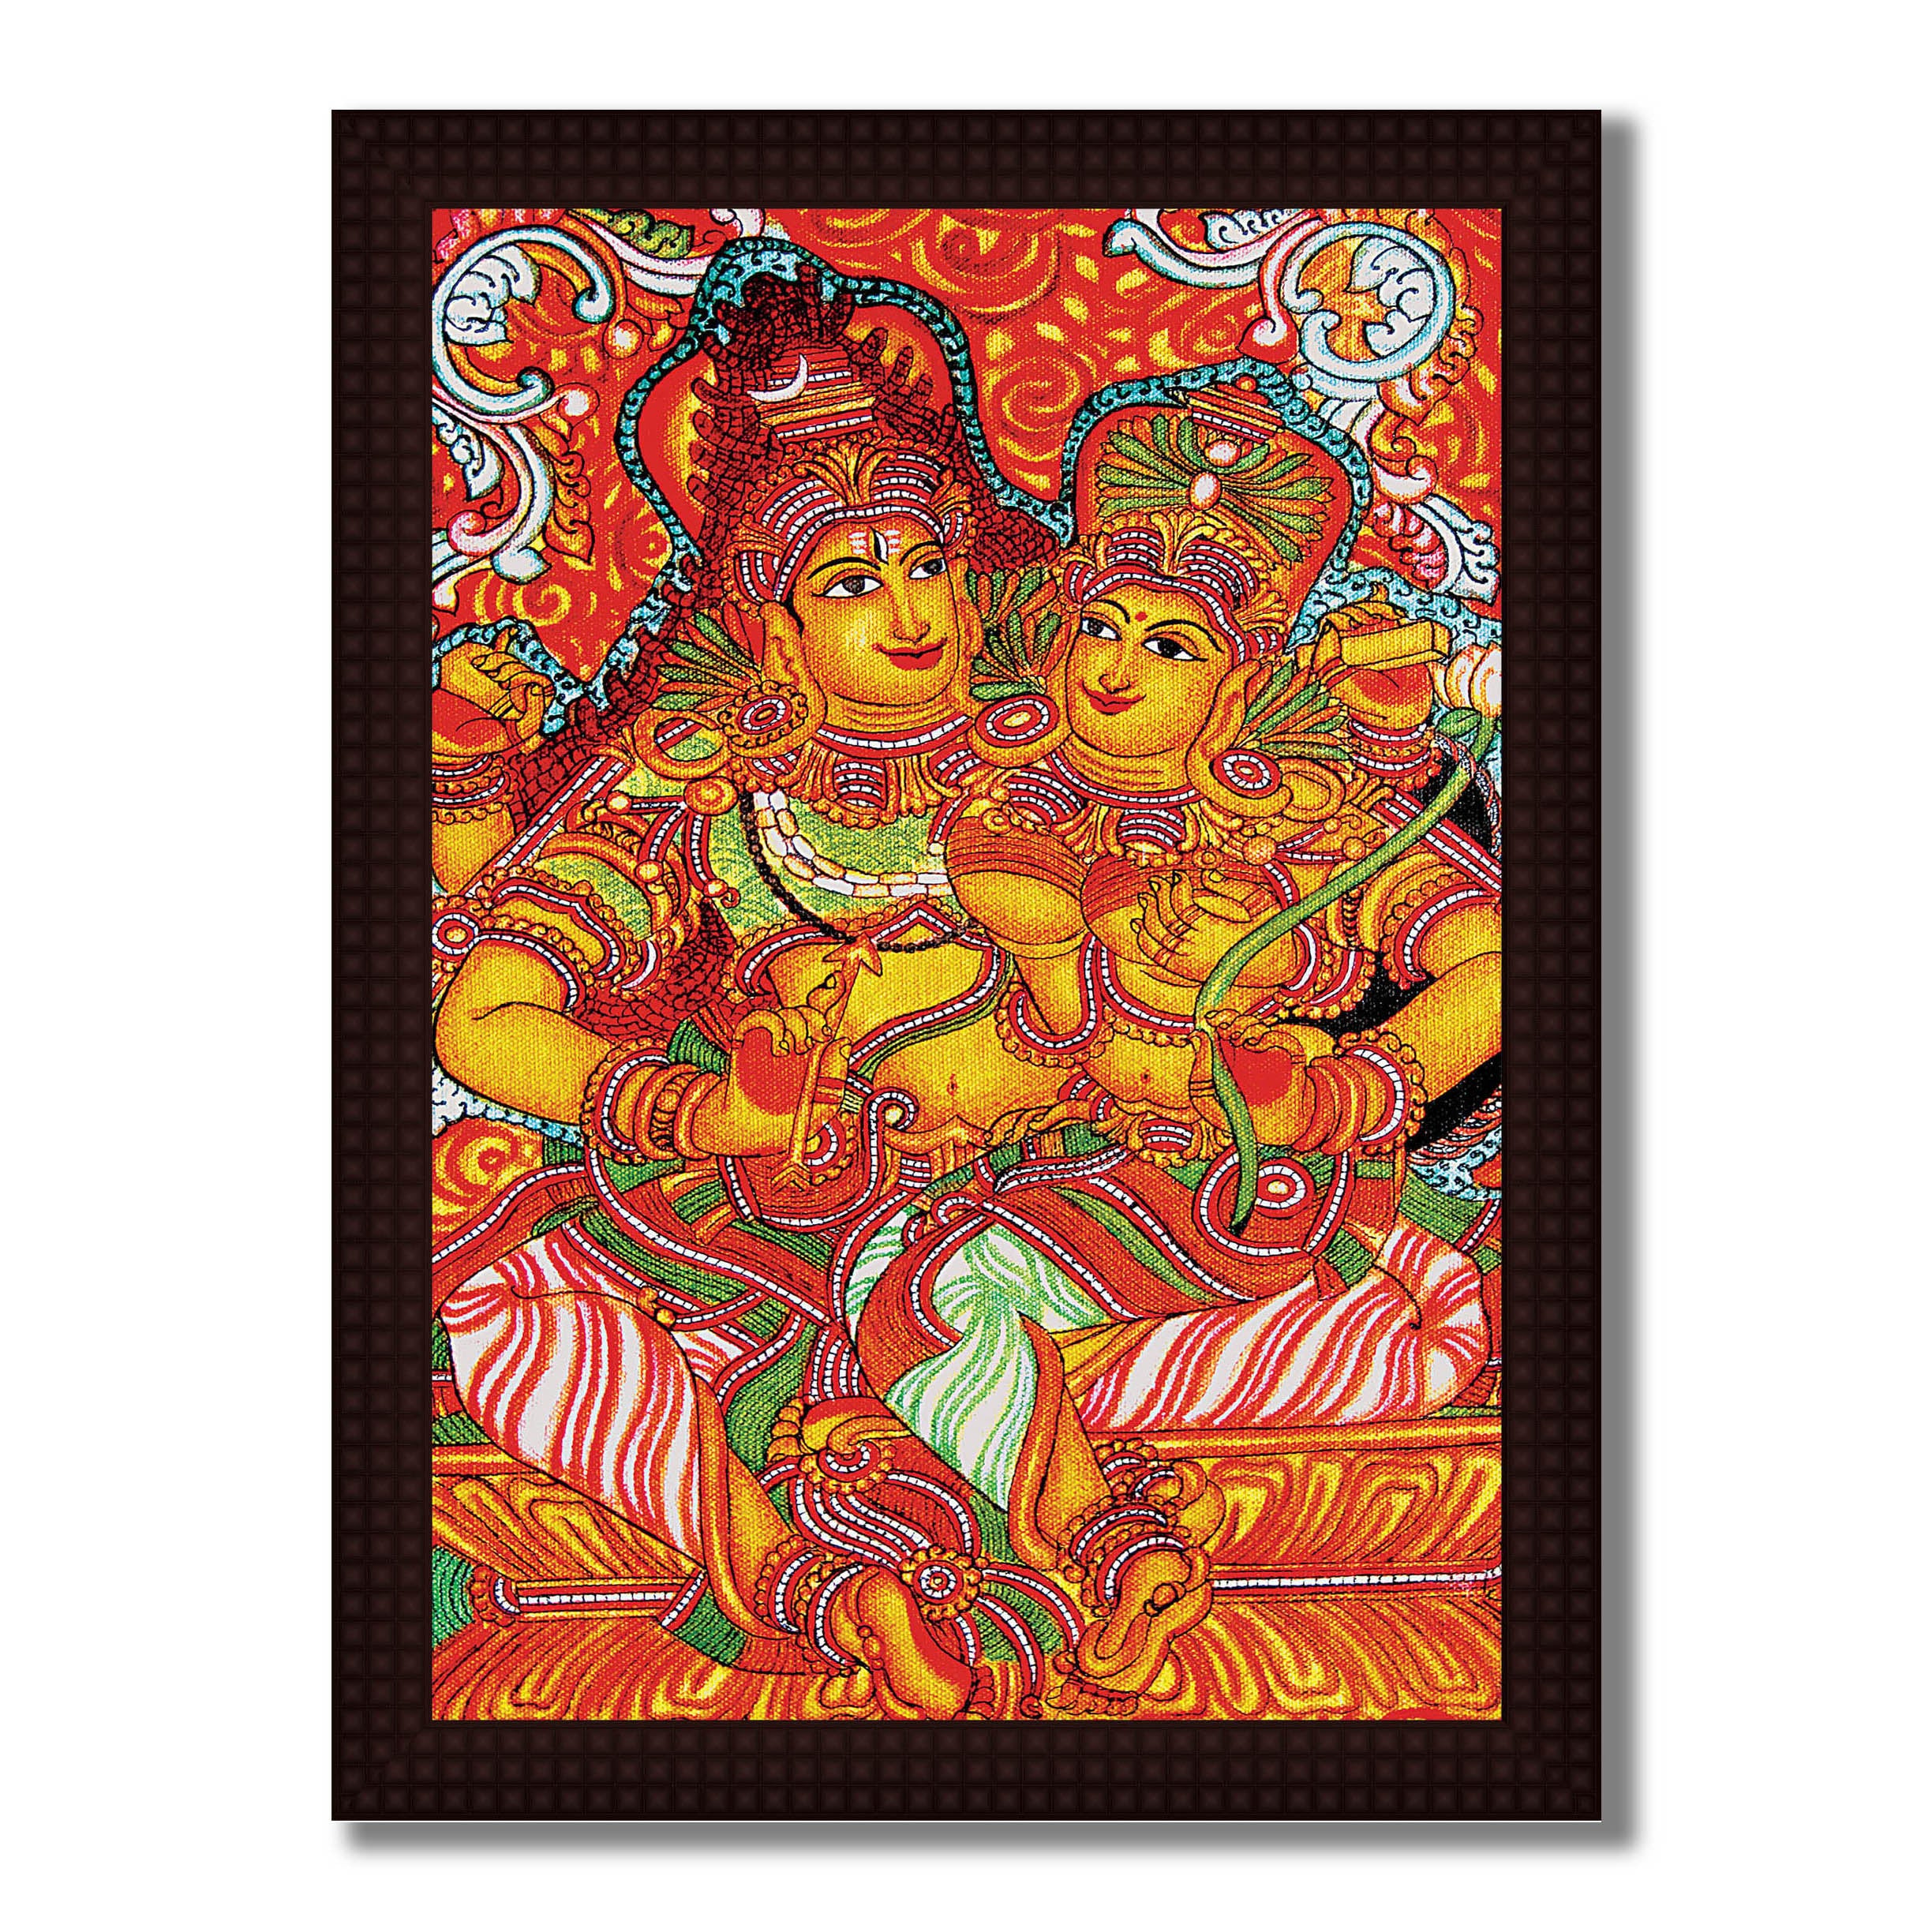 Shiva & Parvati